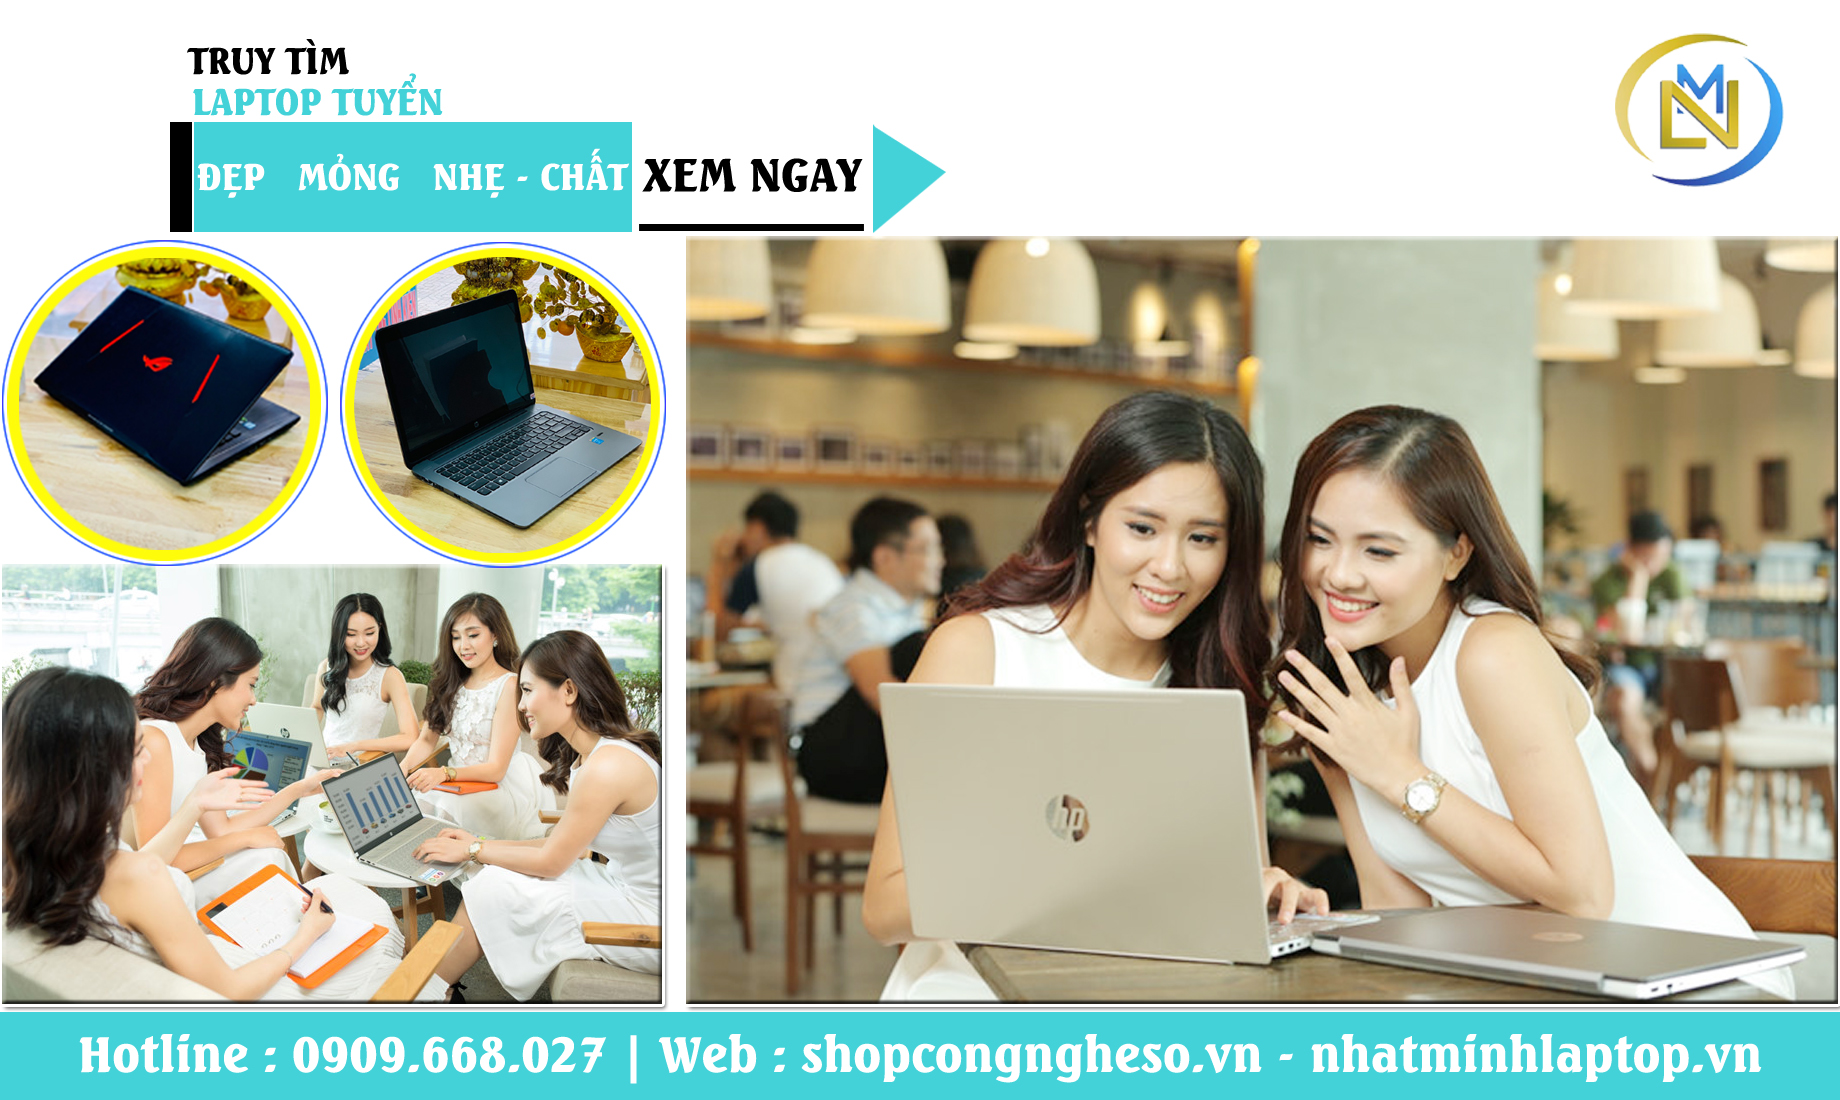 Laptop cũ giá rẻ quận Tân Bình